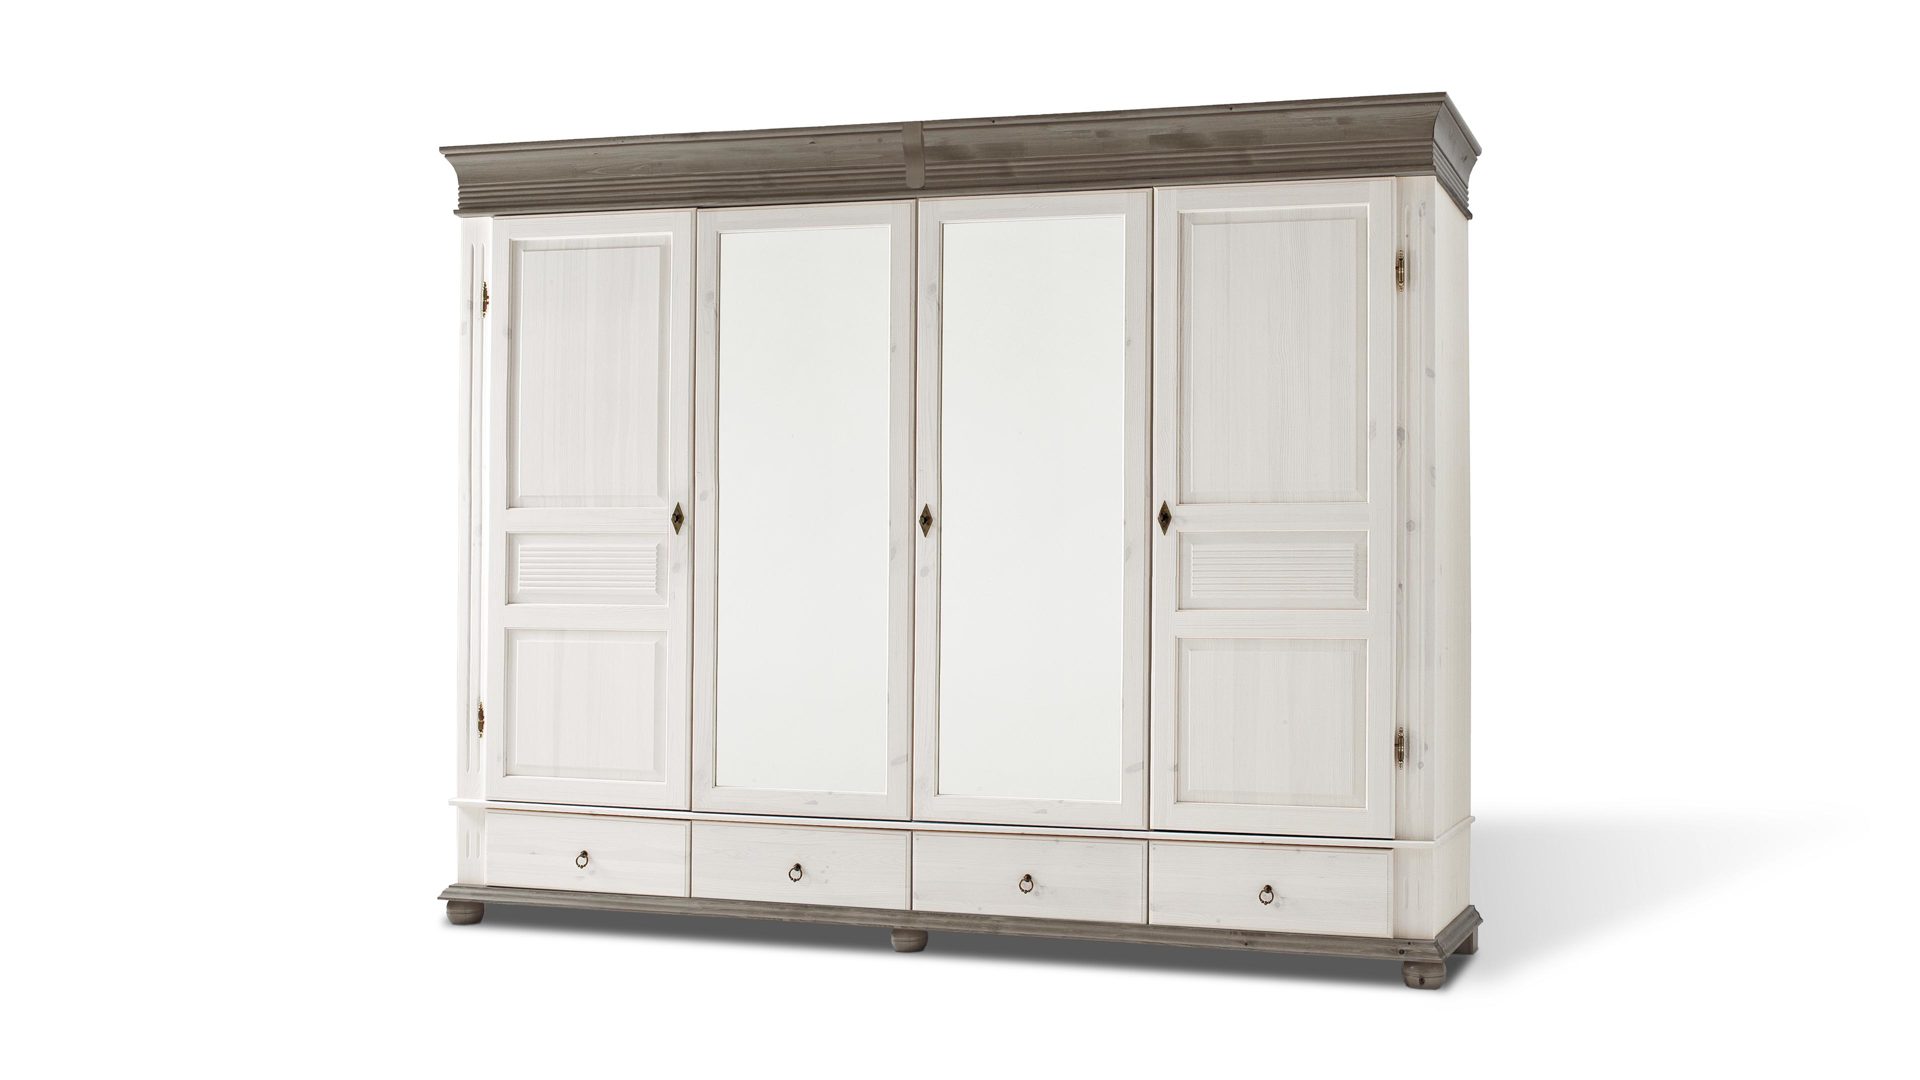 Kleiderschrank Euro diffusion aus Holz in Weiß Kleiderschrank als Schlafzimmermöbel mit Komfort  Lavagrau & Weiß - zwei Holztüren, zwei Spiegeltüren, vier Schubladen